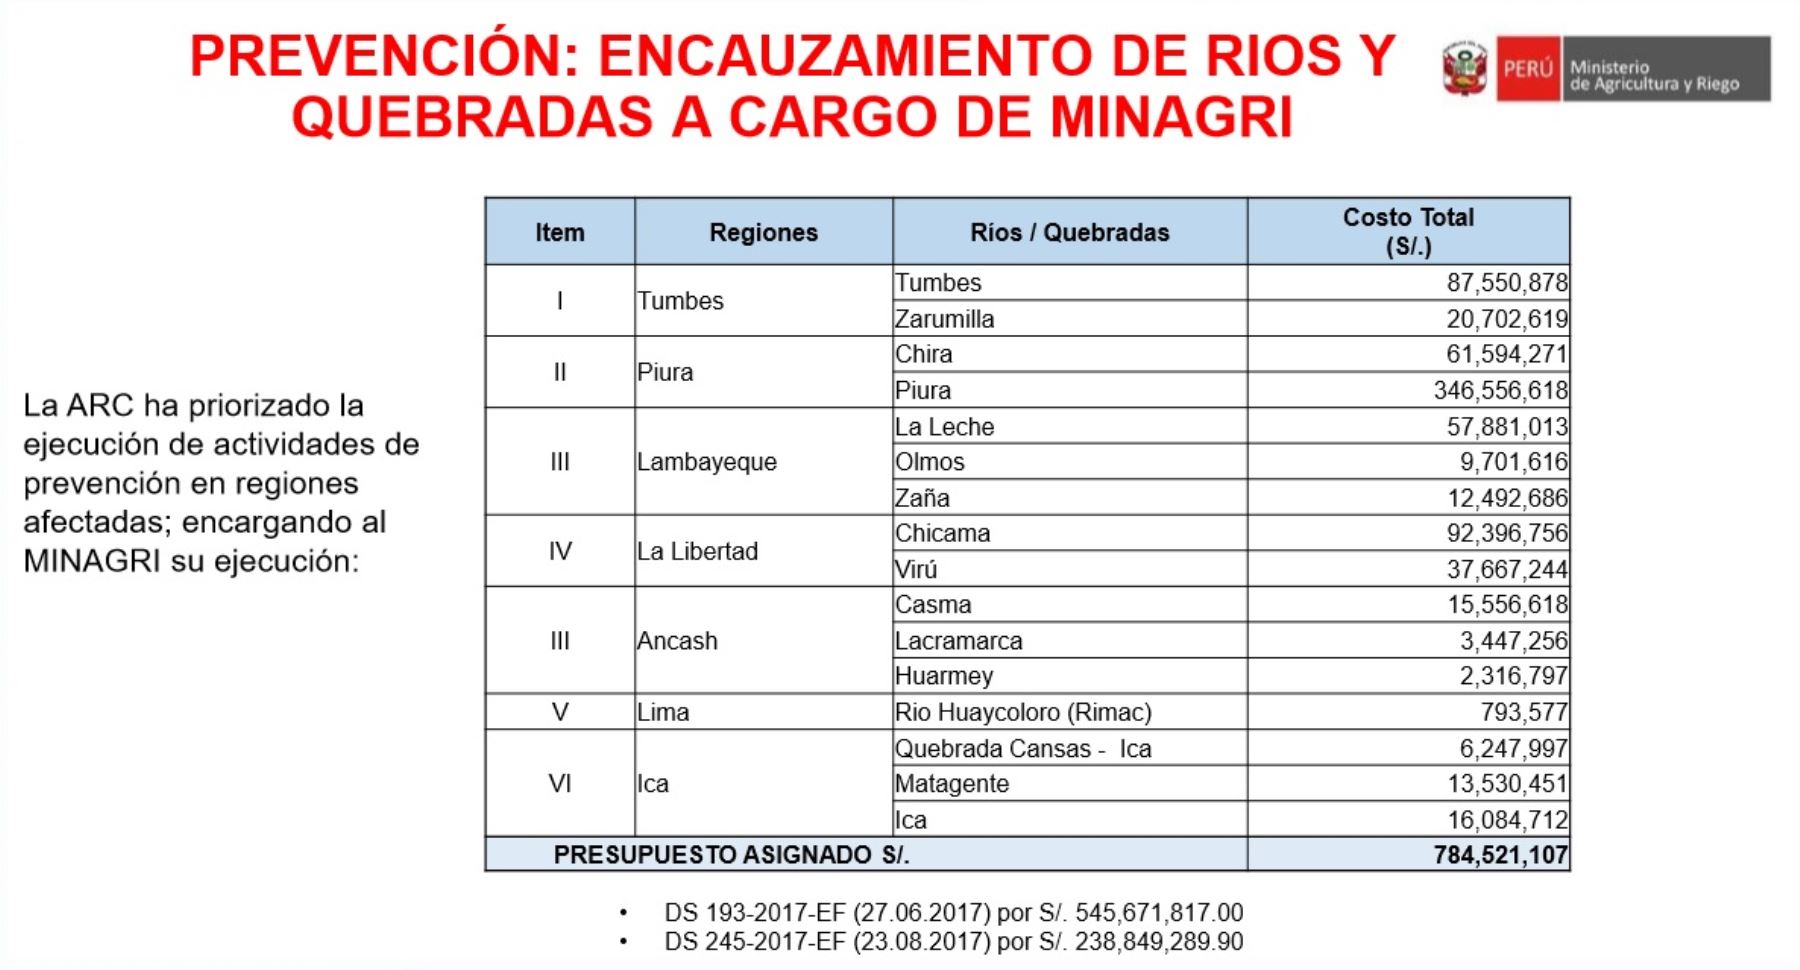 Hernández Calderón detalló que entre setiembre y diciembre de este año se destinará 784 millones 521,107 soles para trabajos de prevención en las regiones afectadas por El Niño Costero, las cuales incluyen encauzamiento de ríos y quebradas.